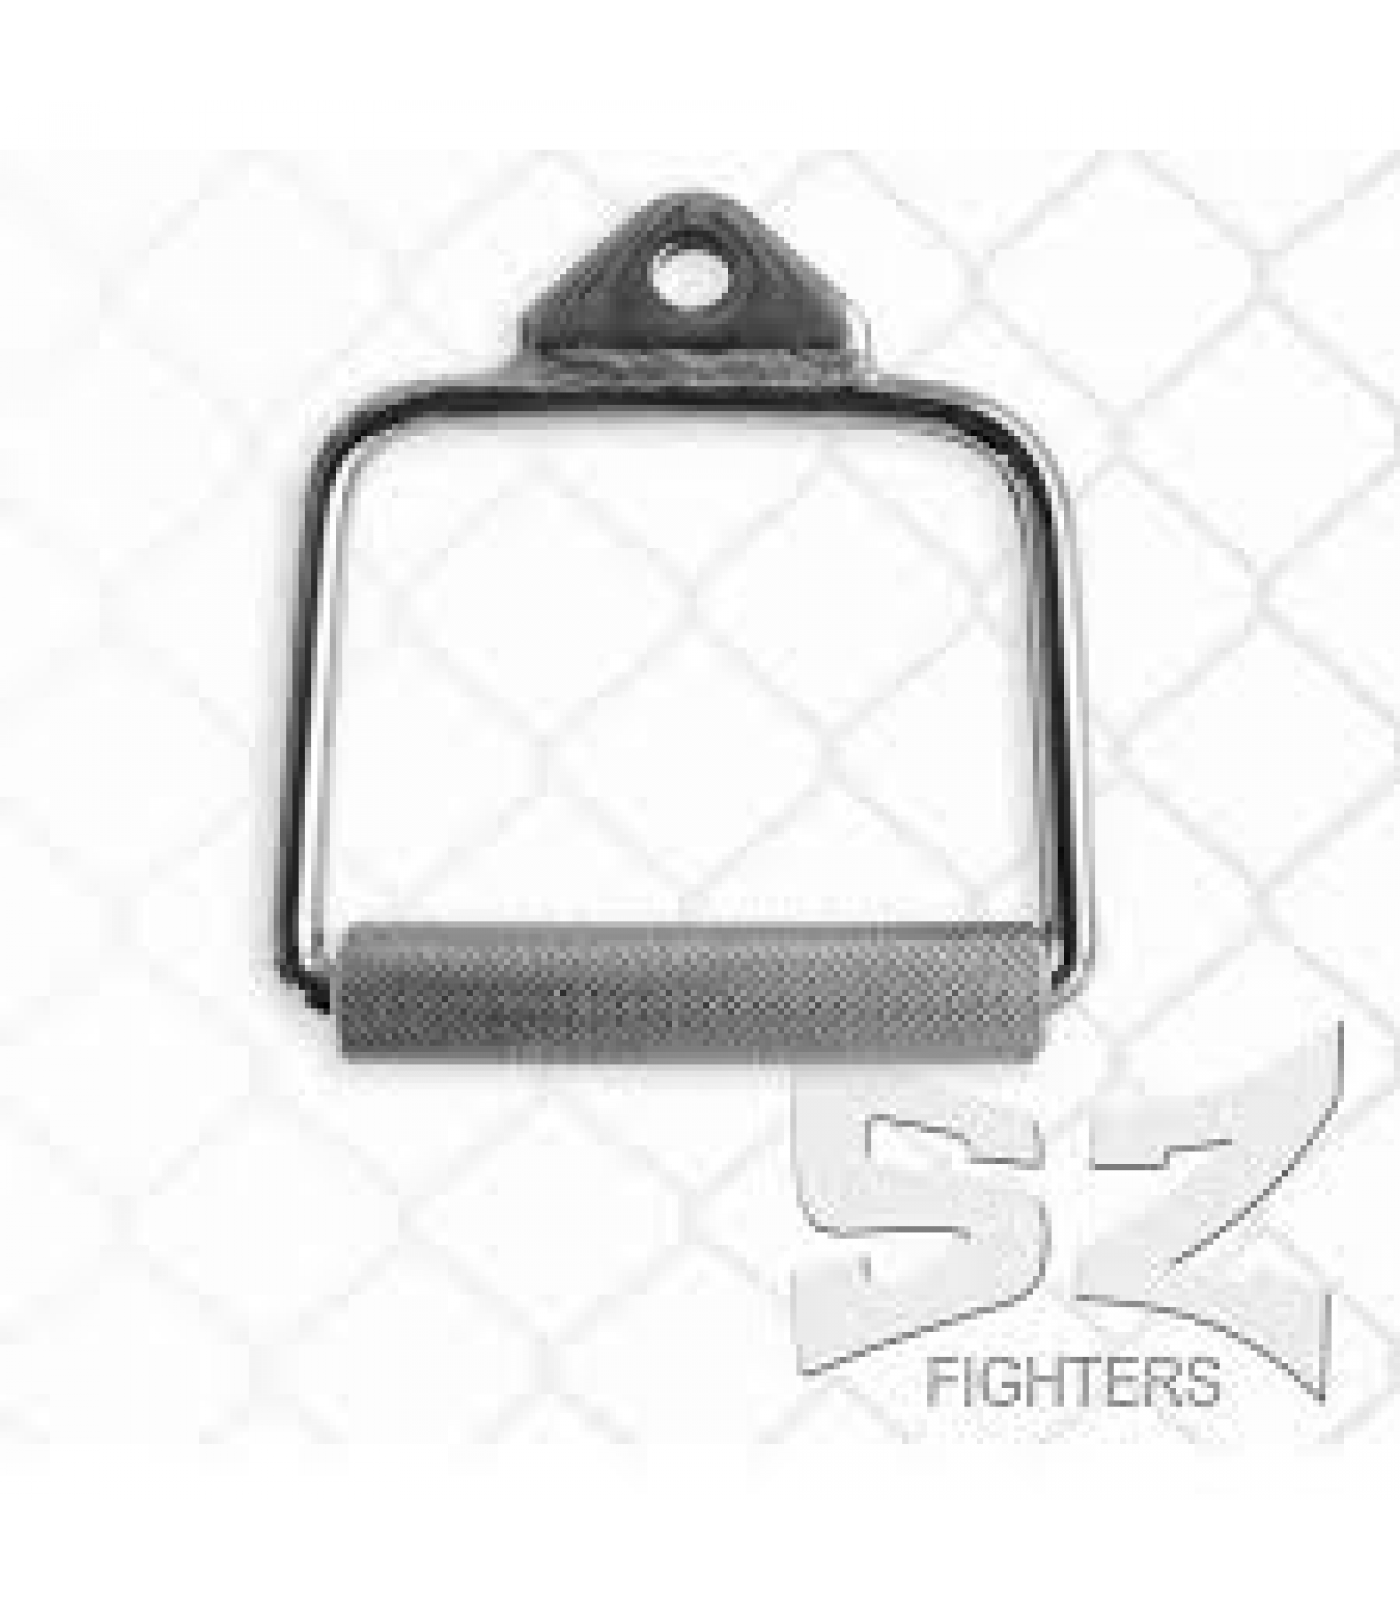 SZ Fighters - Ръкохватка за скрипец - единична / затворена